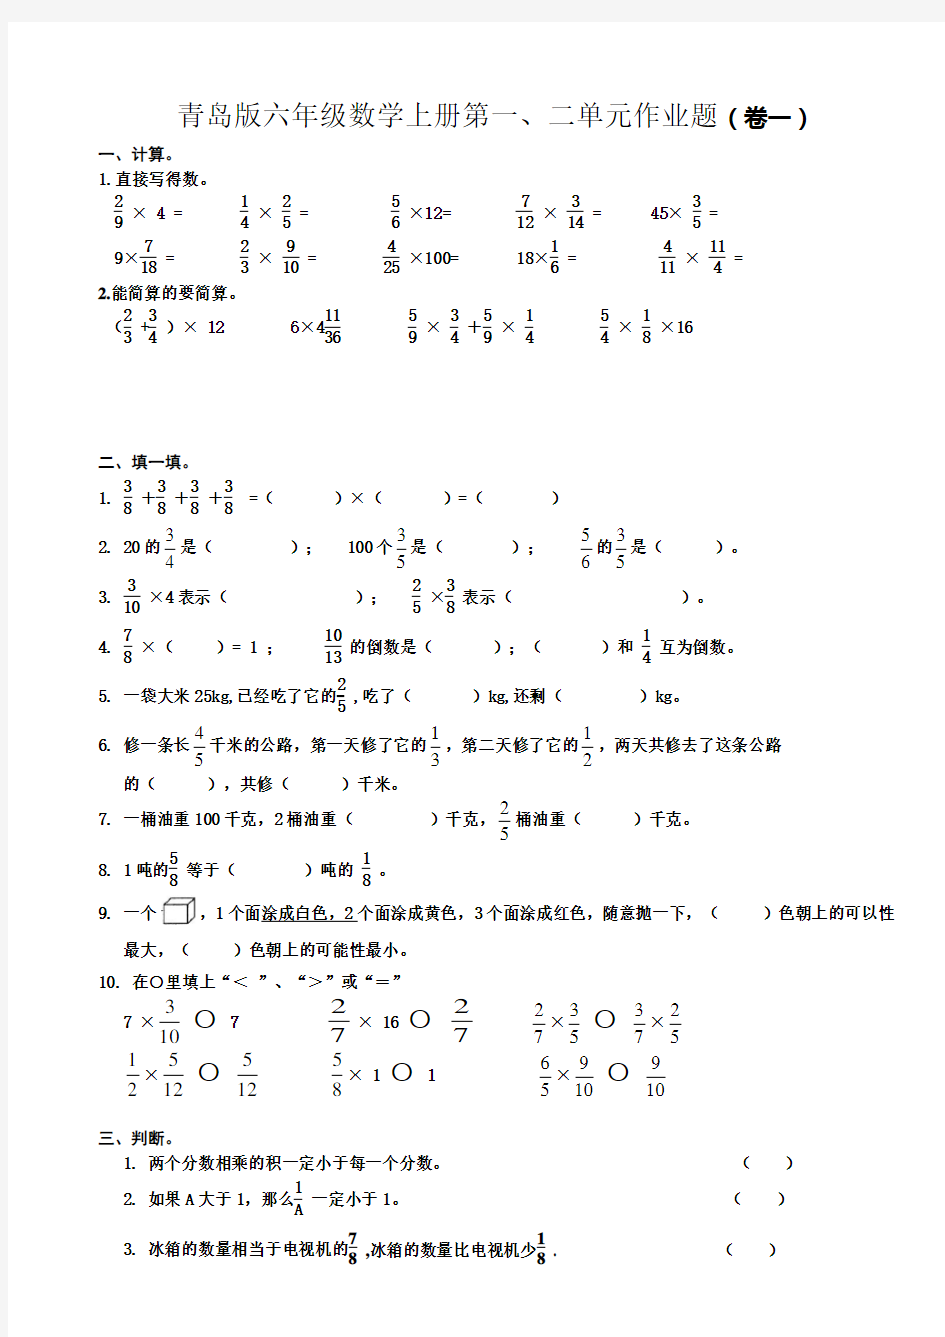 青岛版小学(六三制)六年级数学上册单元试卷(全册)